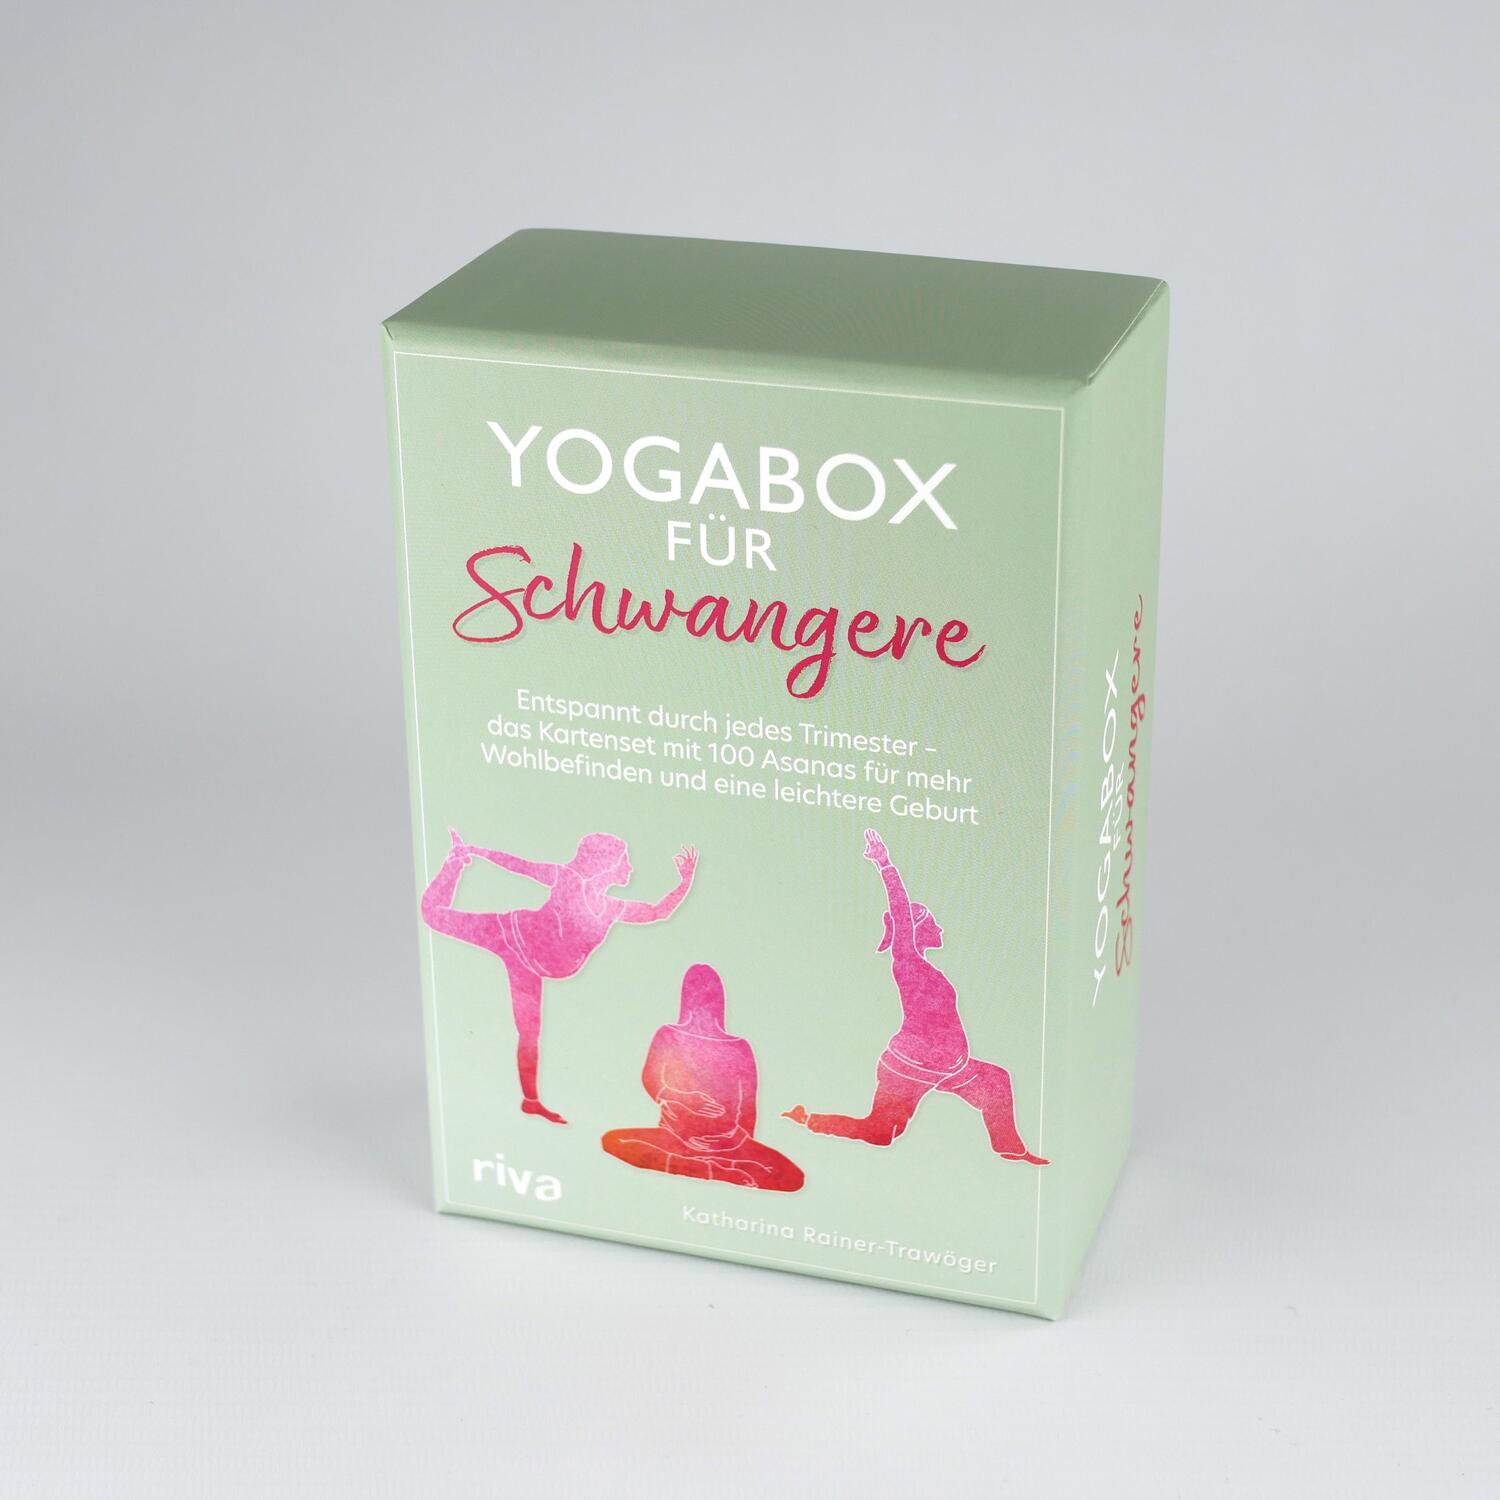 Bild: 9783742323095 | Yogabox für Schwangere | Katharina Rainer-Trawöger | Box | Deutsch